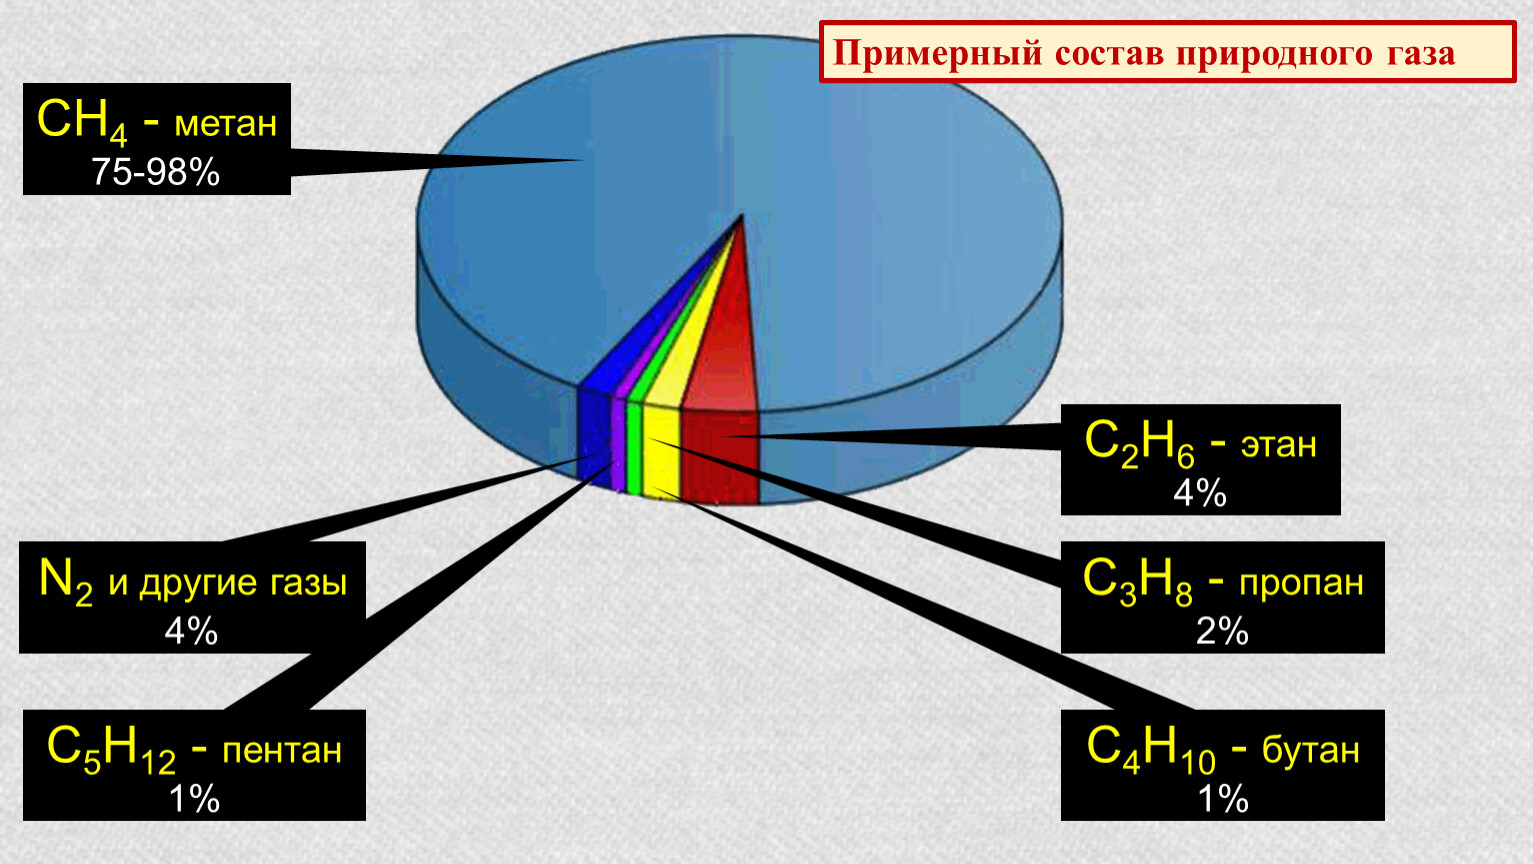 В попутном газе метана. Природный ГАЗ хим состав. Химический состав природного газа диаграмма. Примерный химический состав природного газа. Состав метана газа природный ГАЗ.